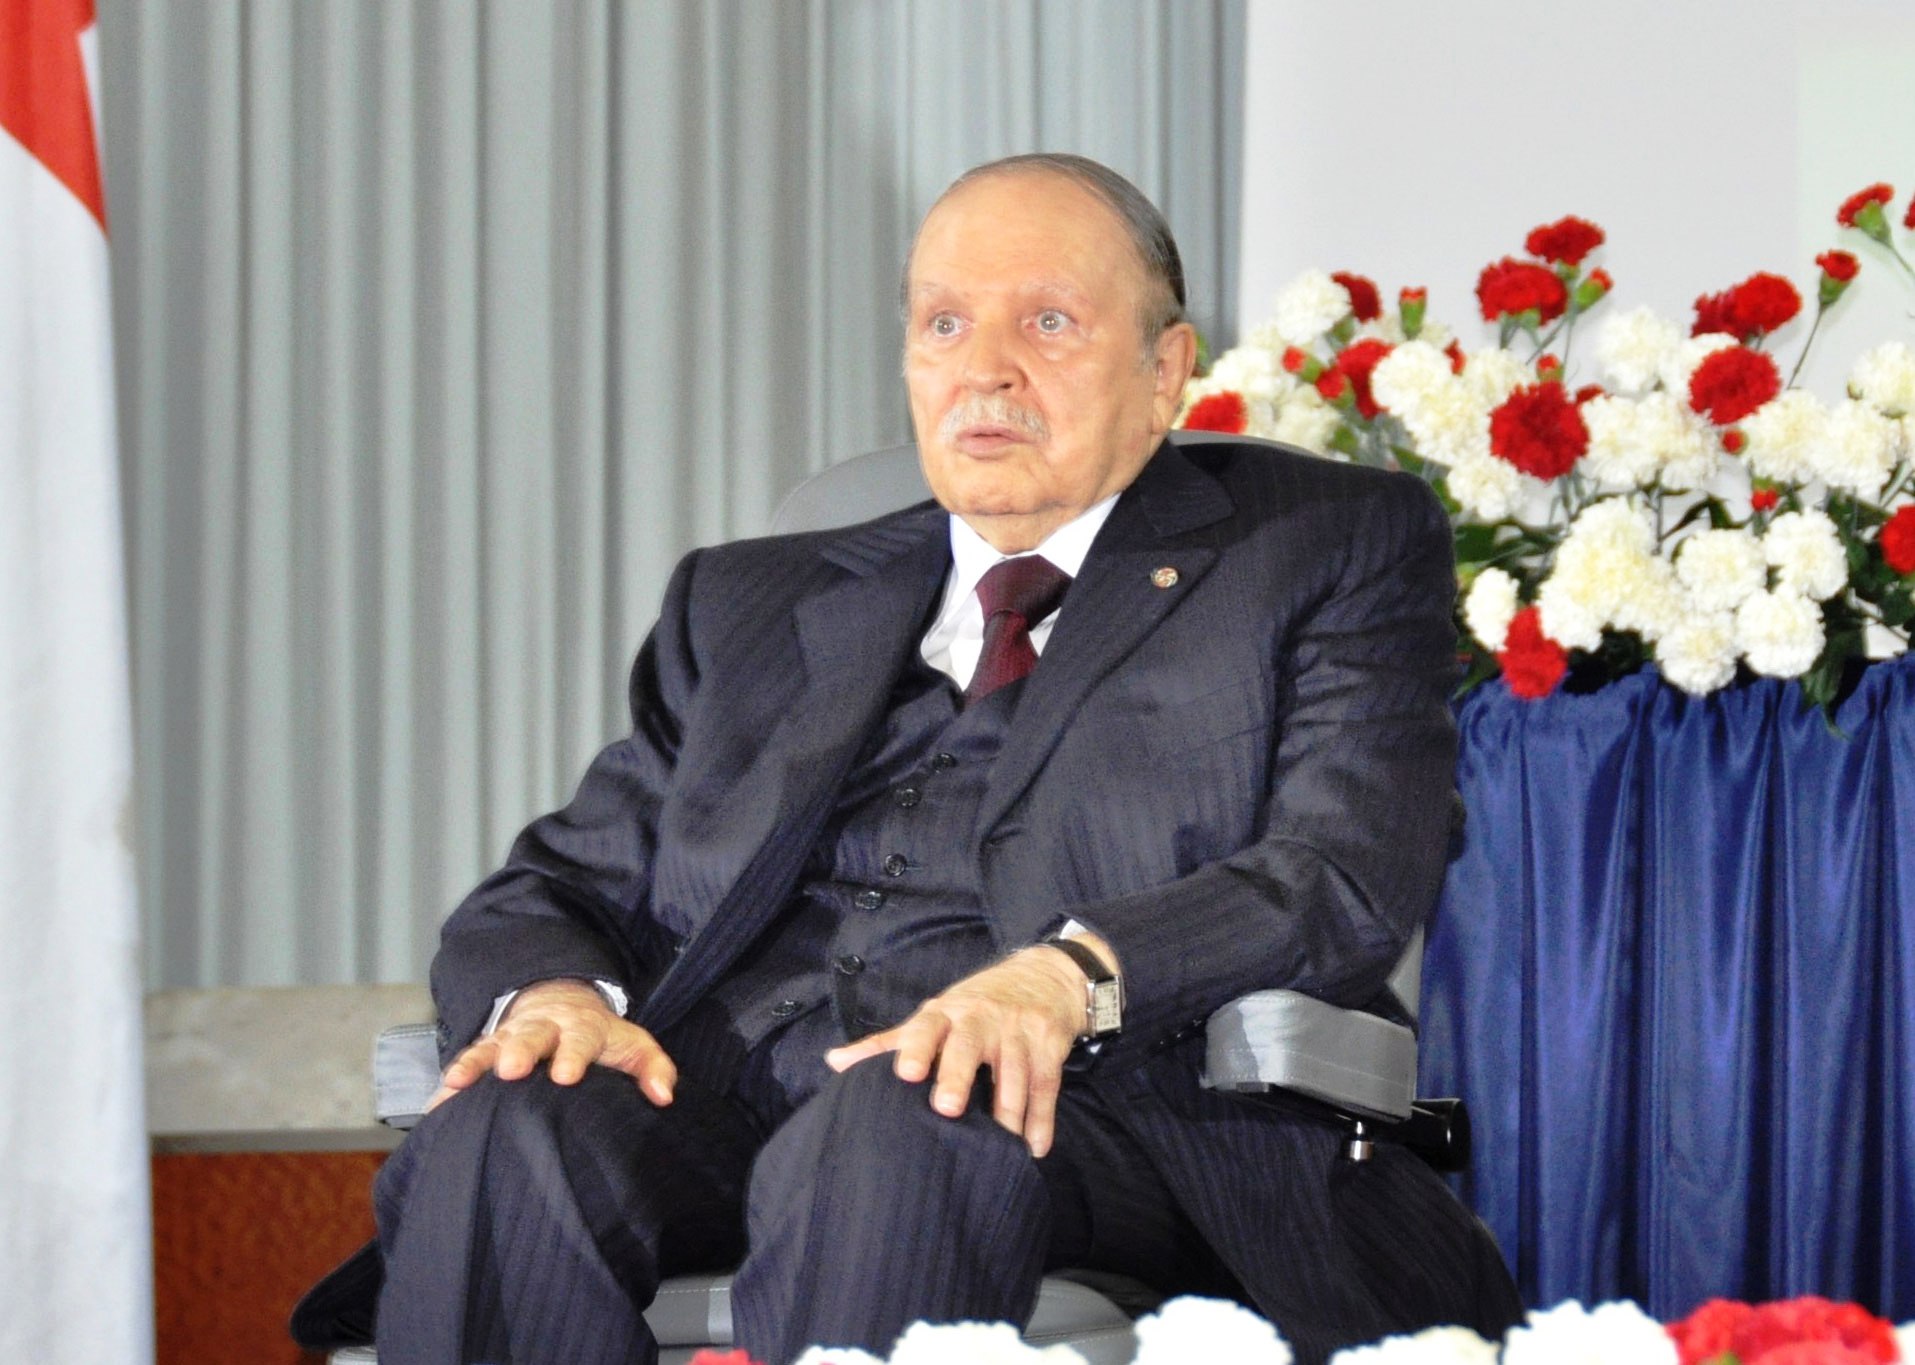 الرئيس الجزائري عبدالعزيز بوتفليقة لم يعلن بعد ترشحه رسميا للانتخابات الرئاسية 2019